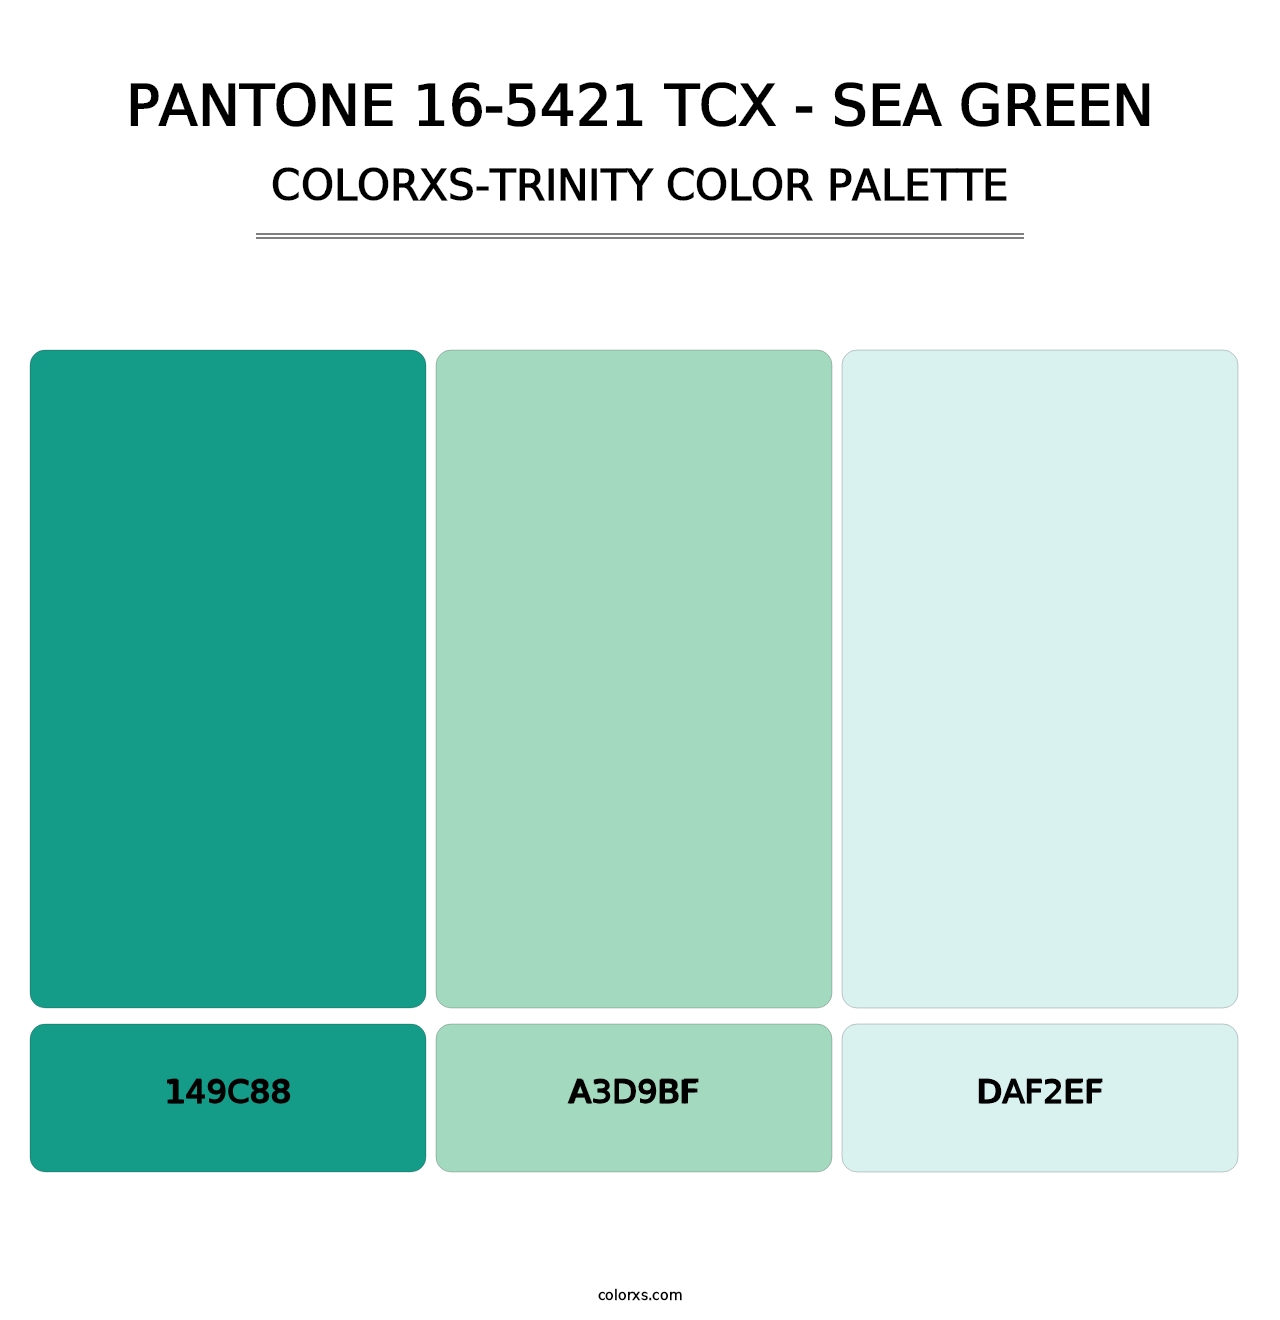 PANTONE 16-5421 TCX - Sea Green - Colorxs Trinity Palette